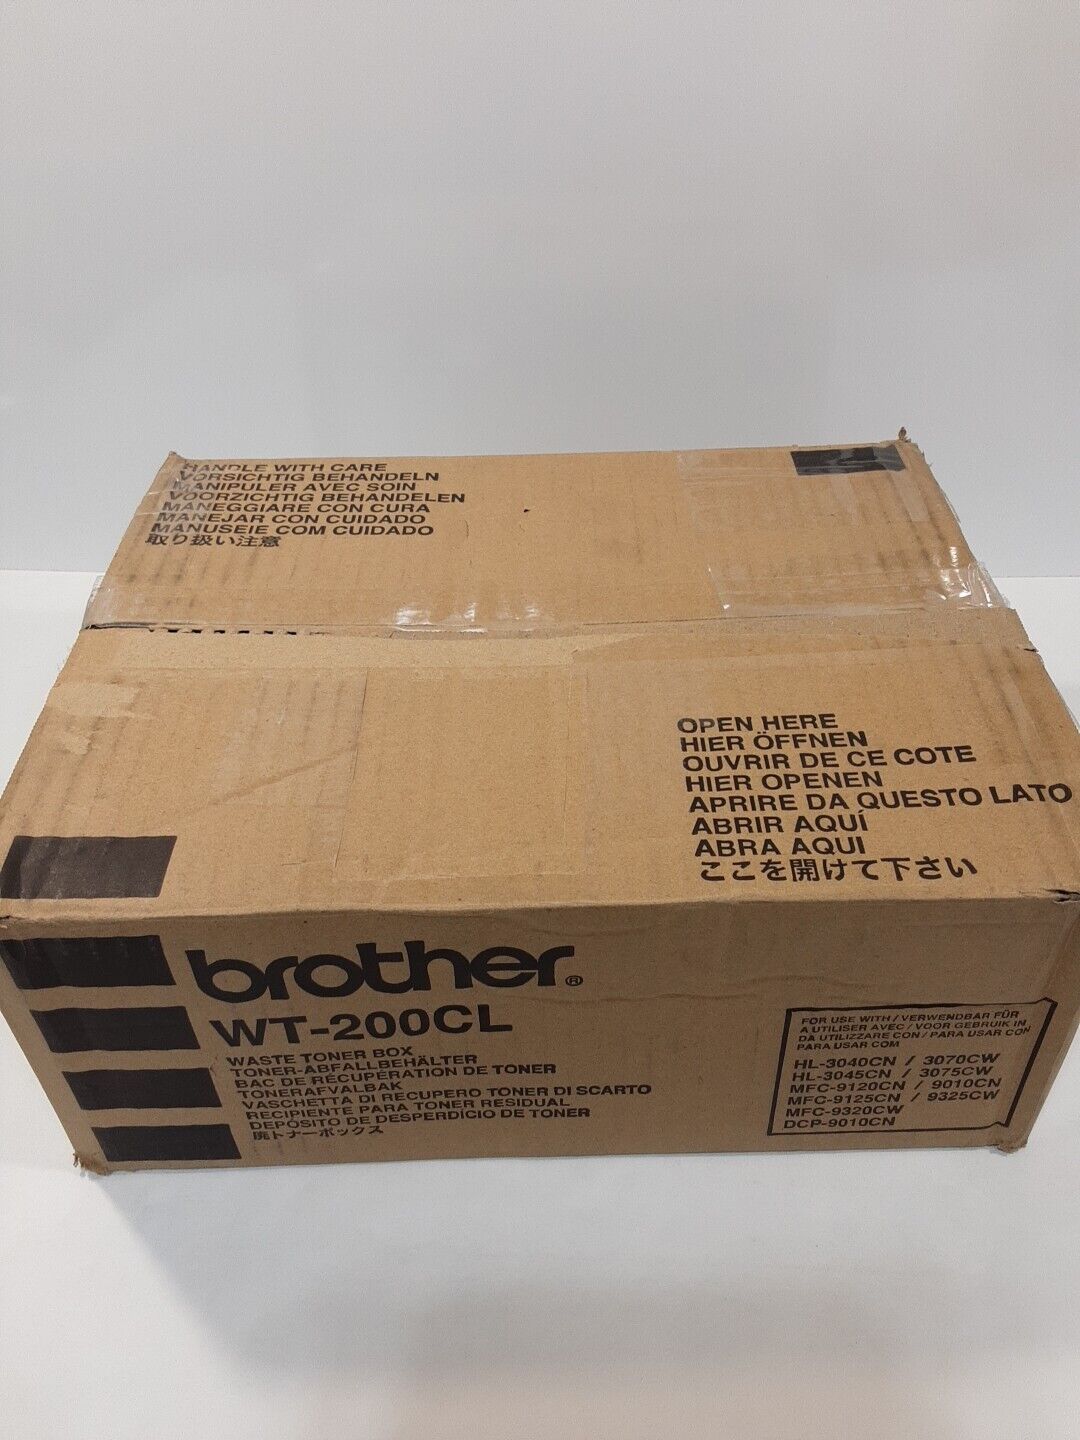 Brother WT200CL Waste Toner Cartridge Genuine Original Authentic OEM